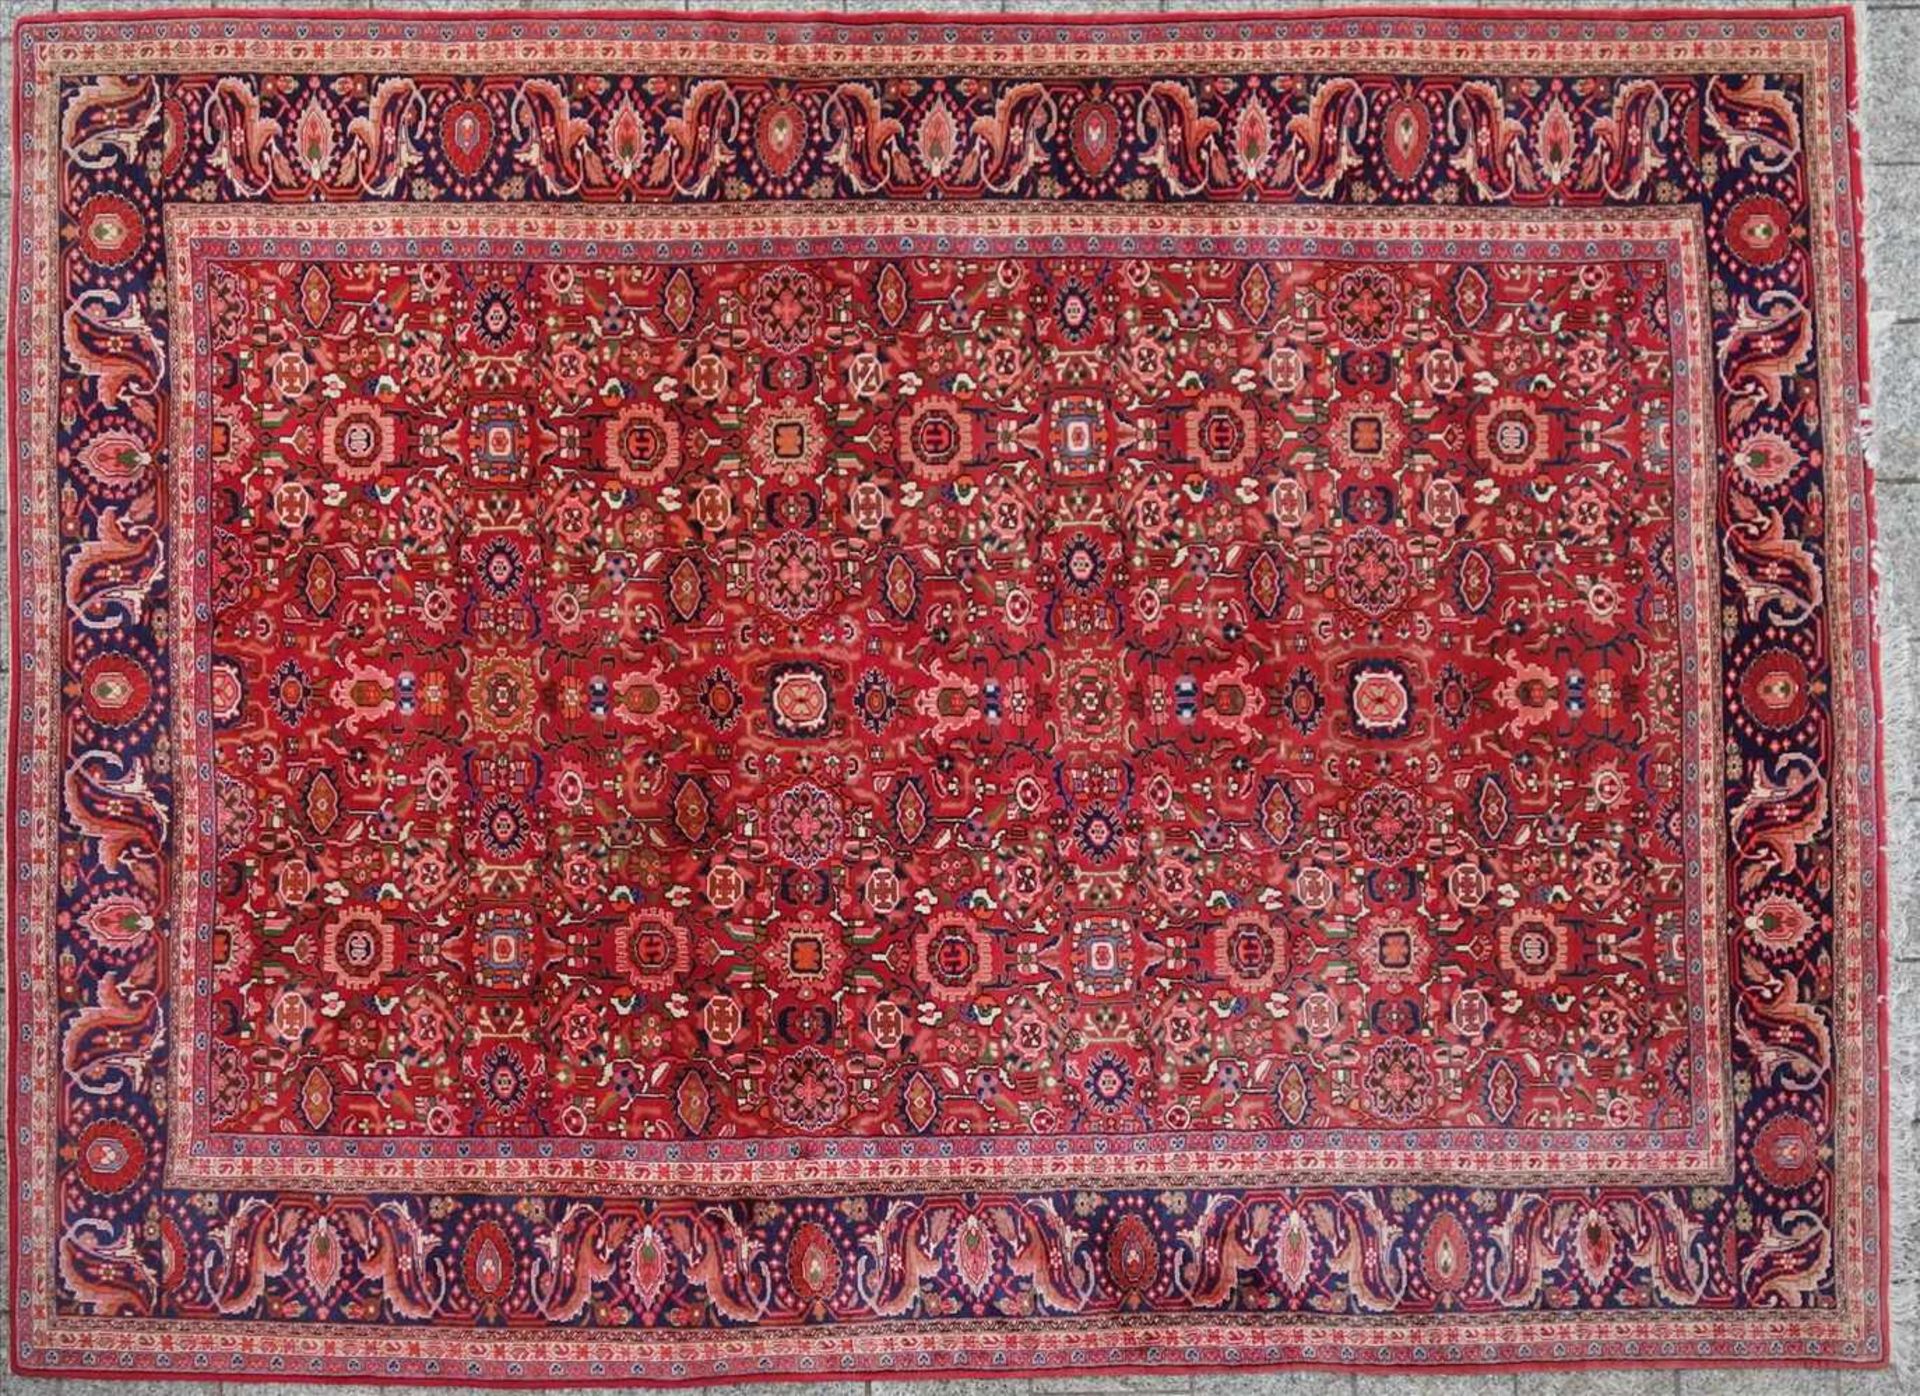 großer Teppich, rotgründig, 365*260cm, mit Gebrauchsspuren